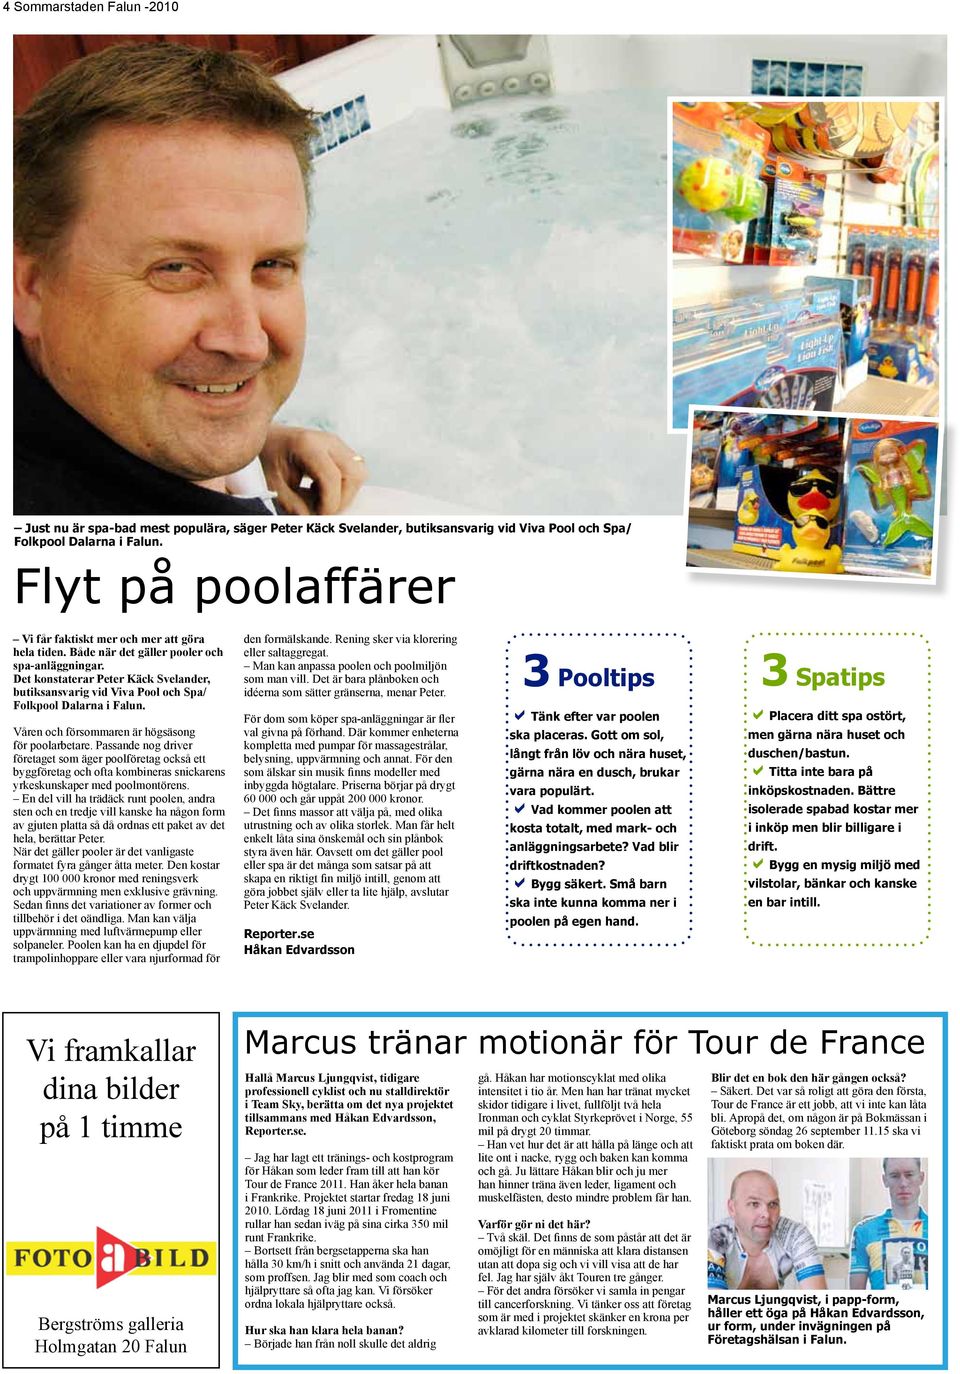 Det kostaterar Peter Käck Svelader, butiksasvarig vid Viva Pool och Spa/ Folkpool Dalara i Falu. Våre och försommare är högsäsog för poolarbetare.